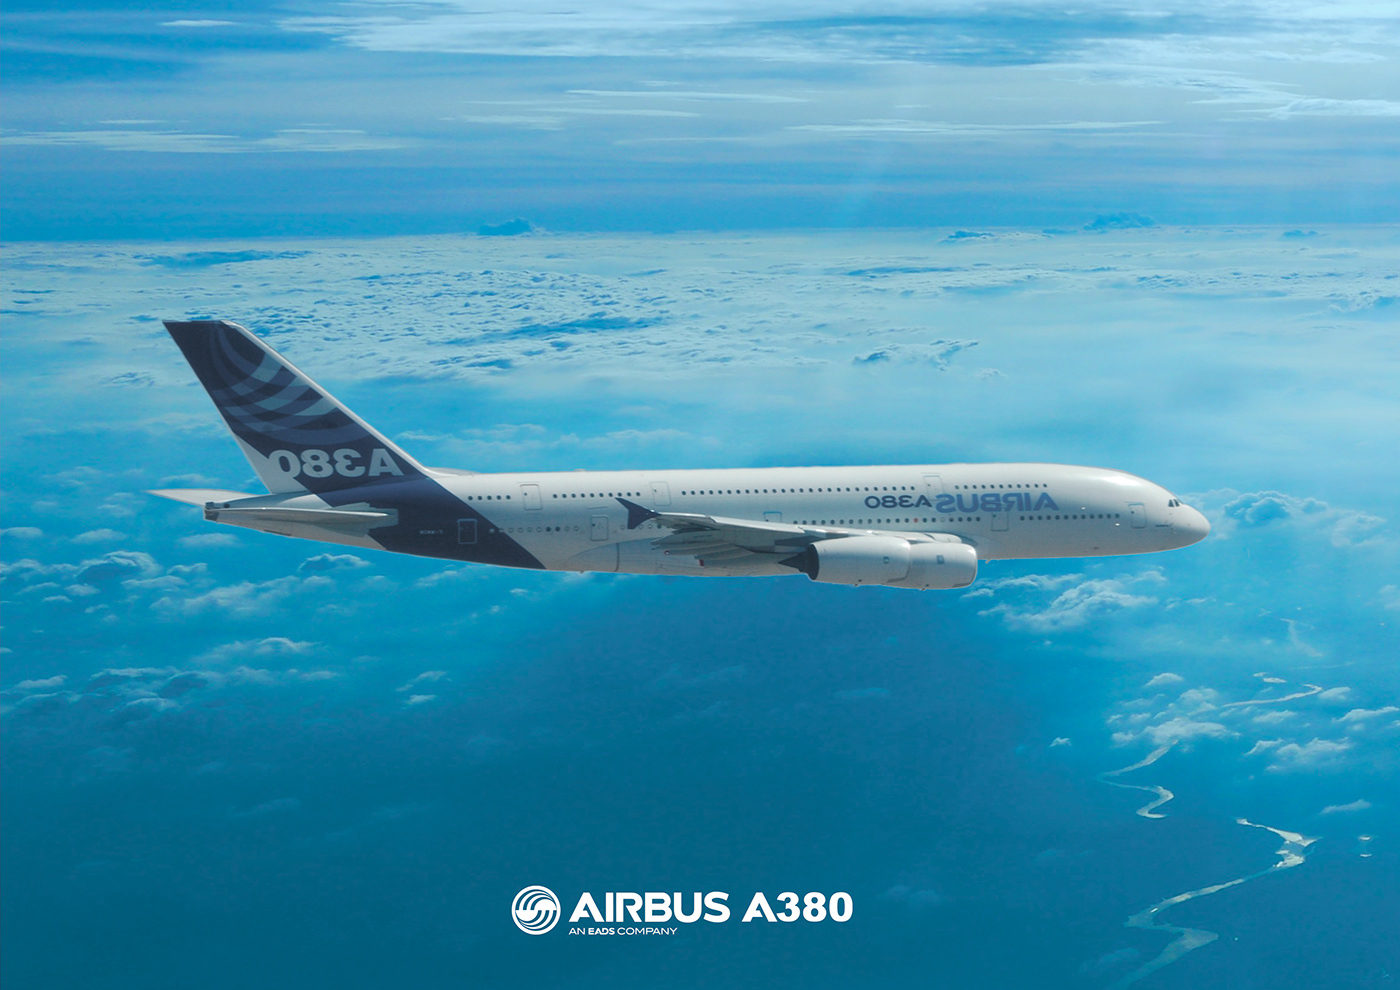 Airbus airbus a380 airline airplane airport catalog design consept art consept design  Poster Design Website Design